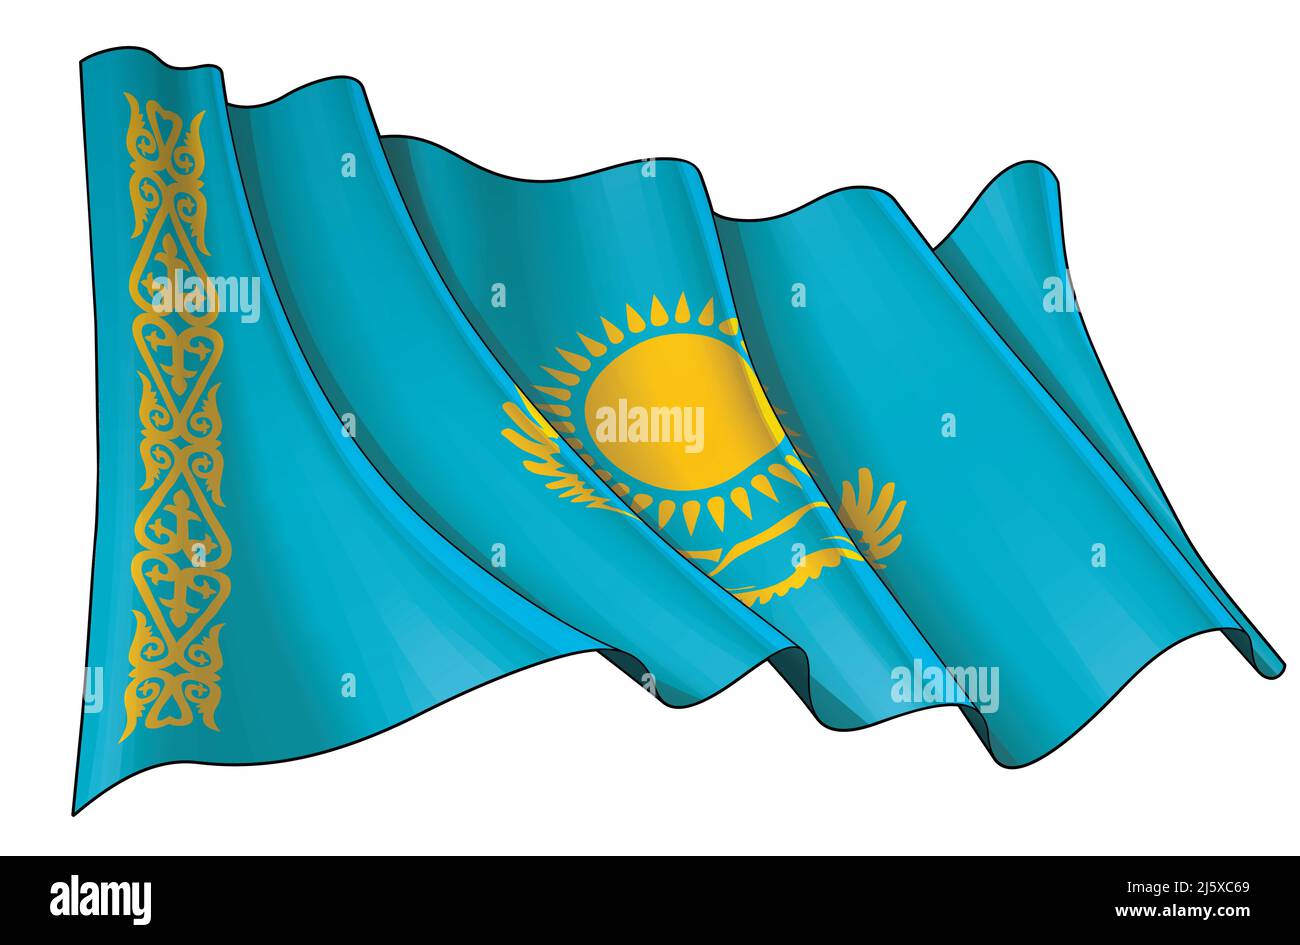 Illustrazione vettoriale di una bandiera ondulata del Kazakistan. Tutti gli elementi in modo preciso su livelli e gruppi ben definiti. Illustrazione Vettoriale